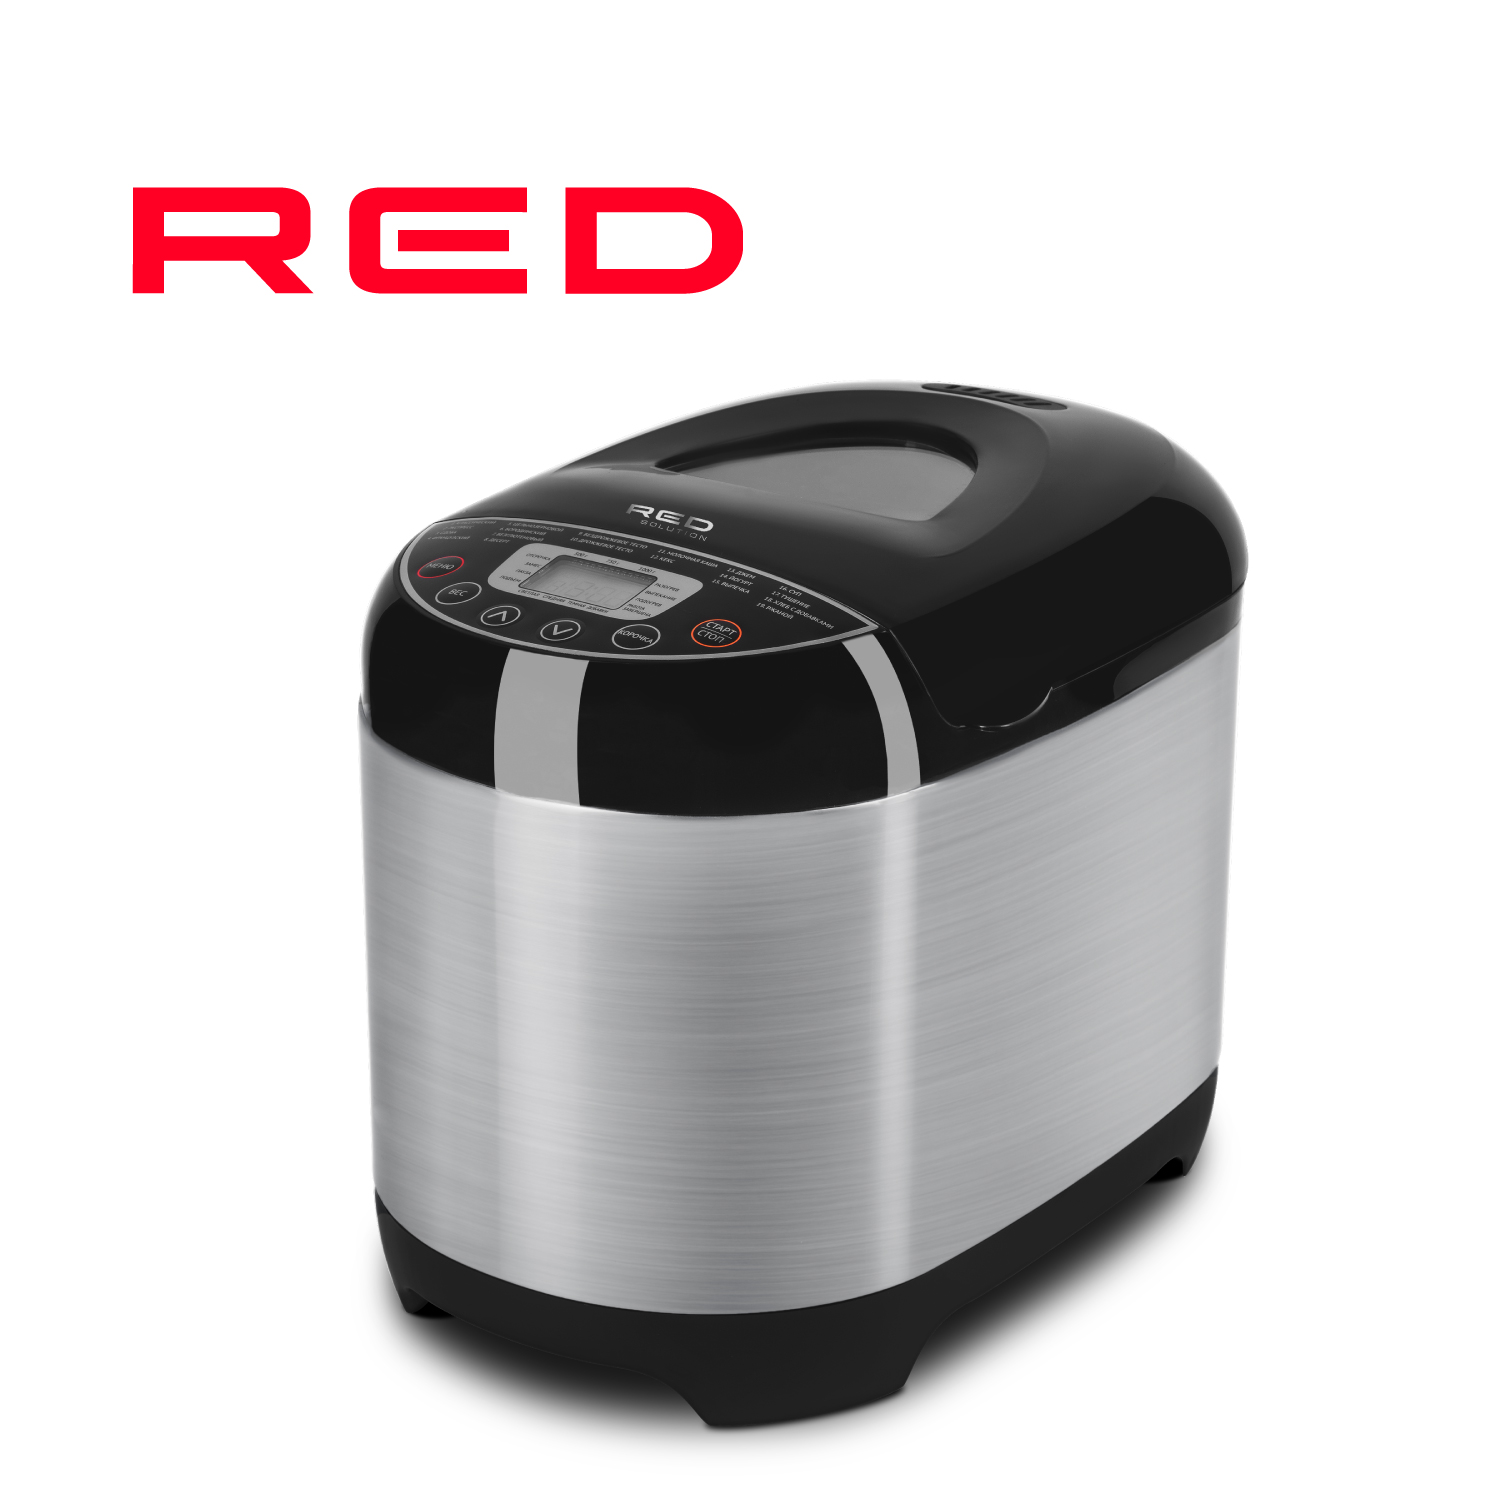 Хлебопечка RED SOLUTION RBM-M1911 серебристый, серый, черный пылесос red solution rv ur362 серый